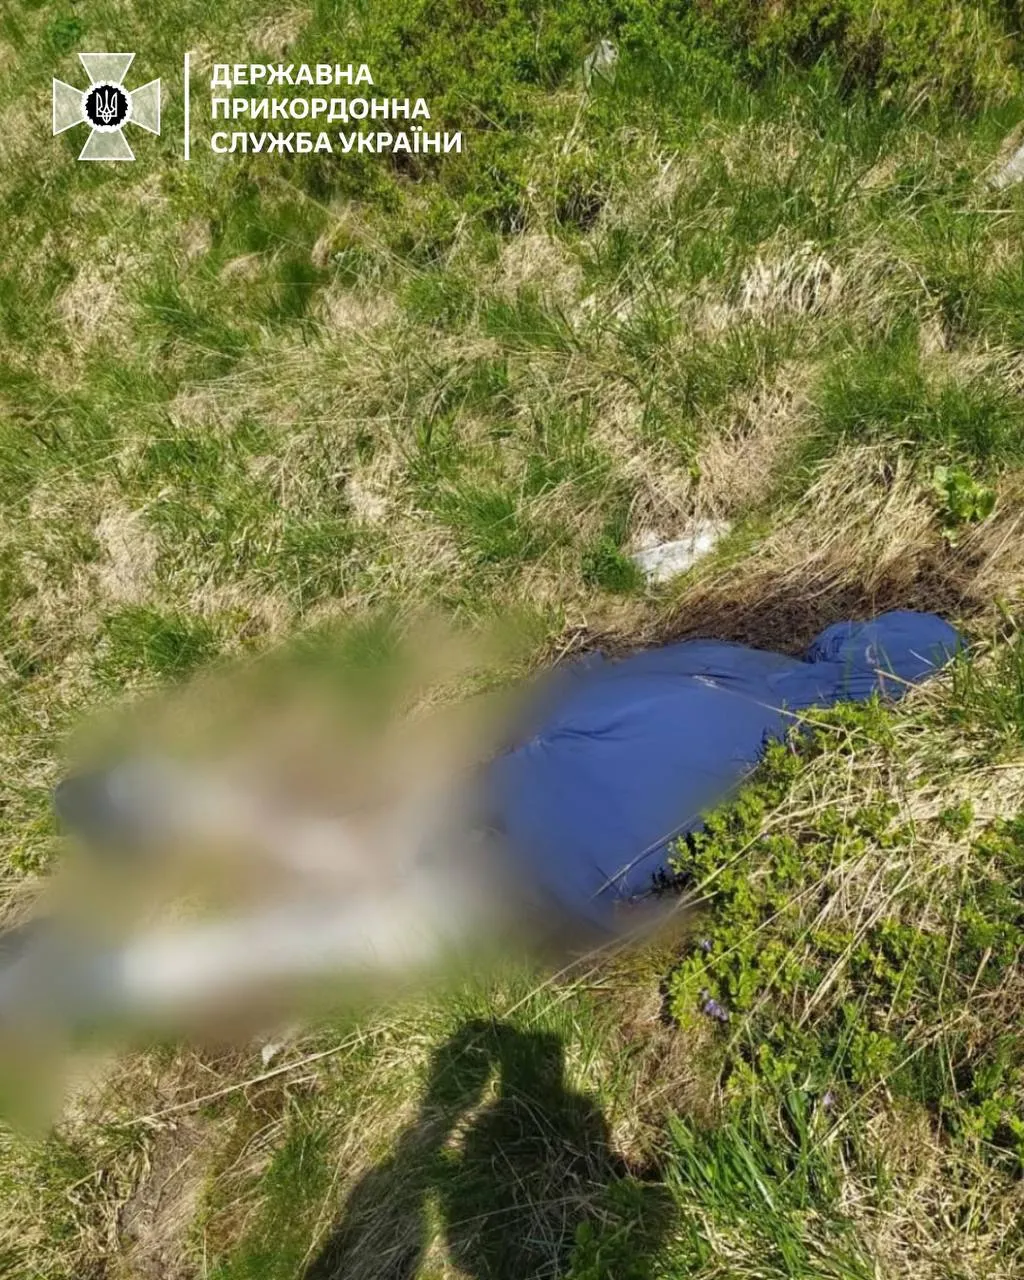 ДПСУ виявили тіло людини у Карпатах 9 червня